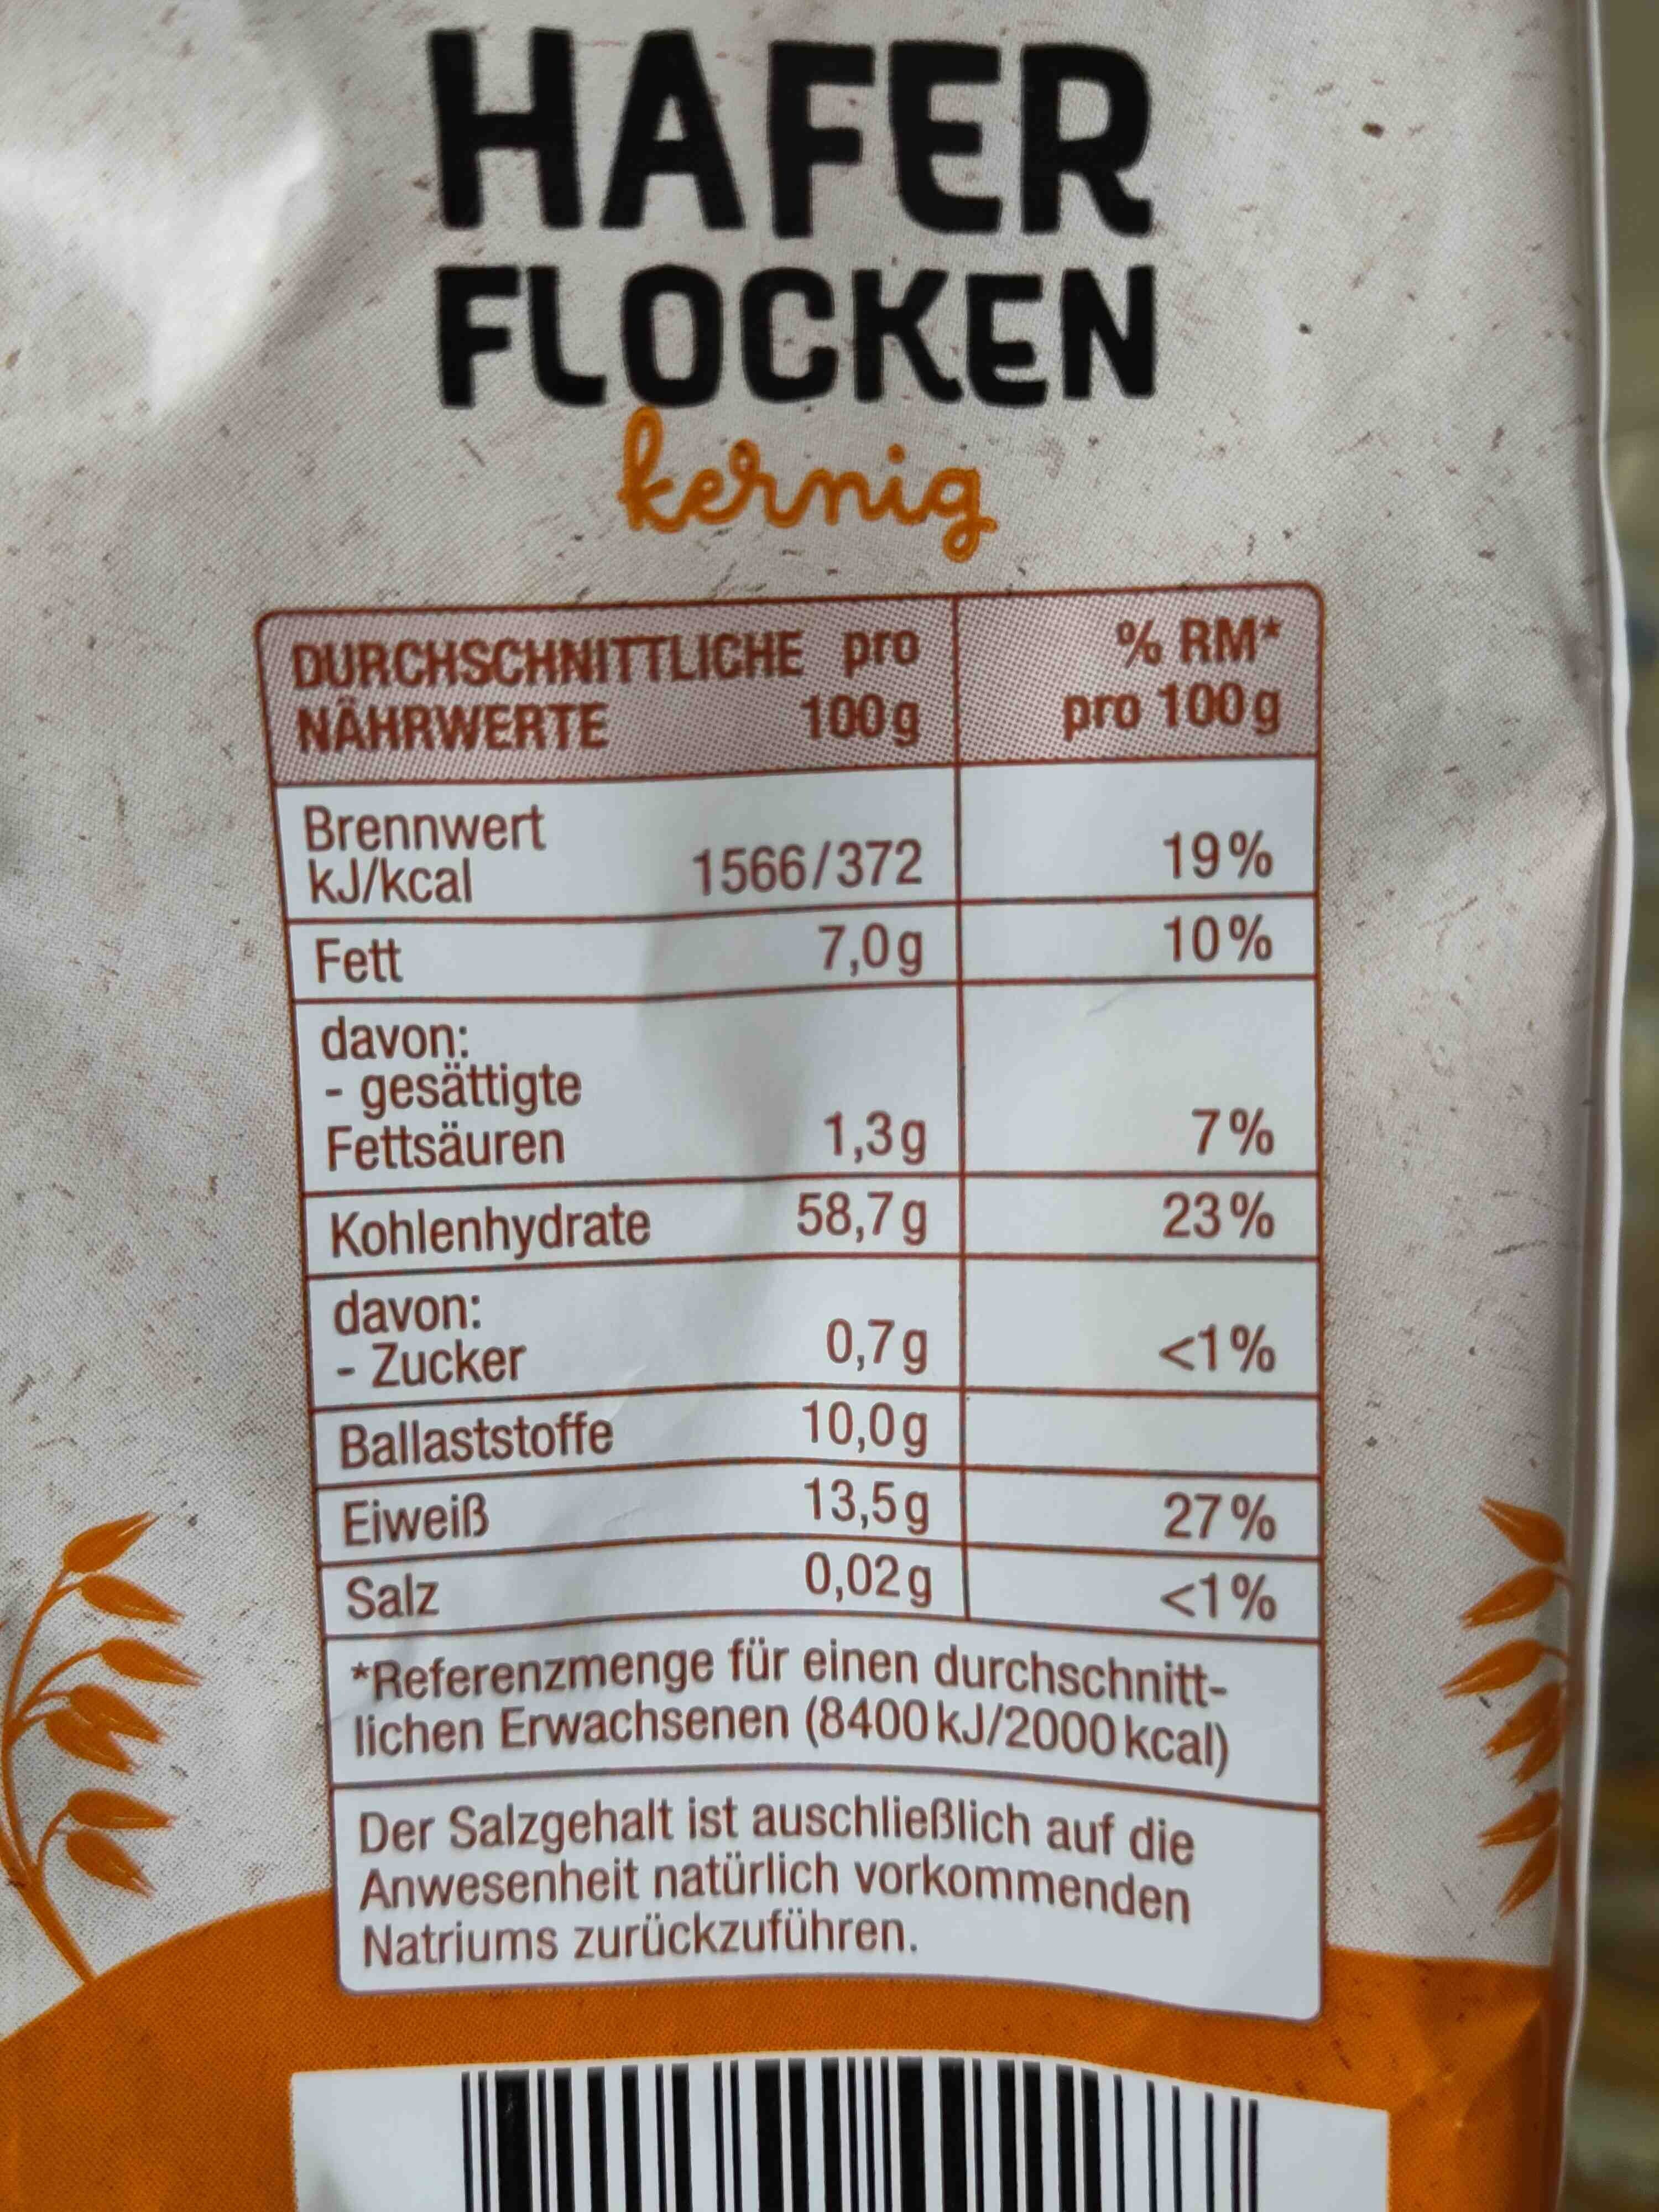 Haferflocken Kernig - Ingredients